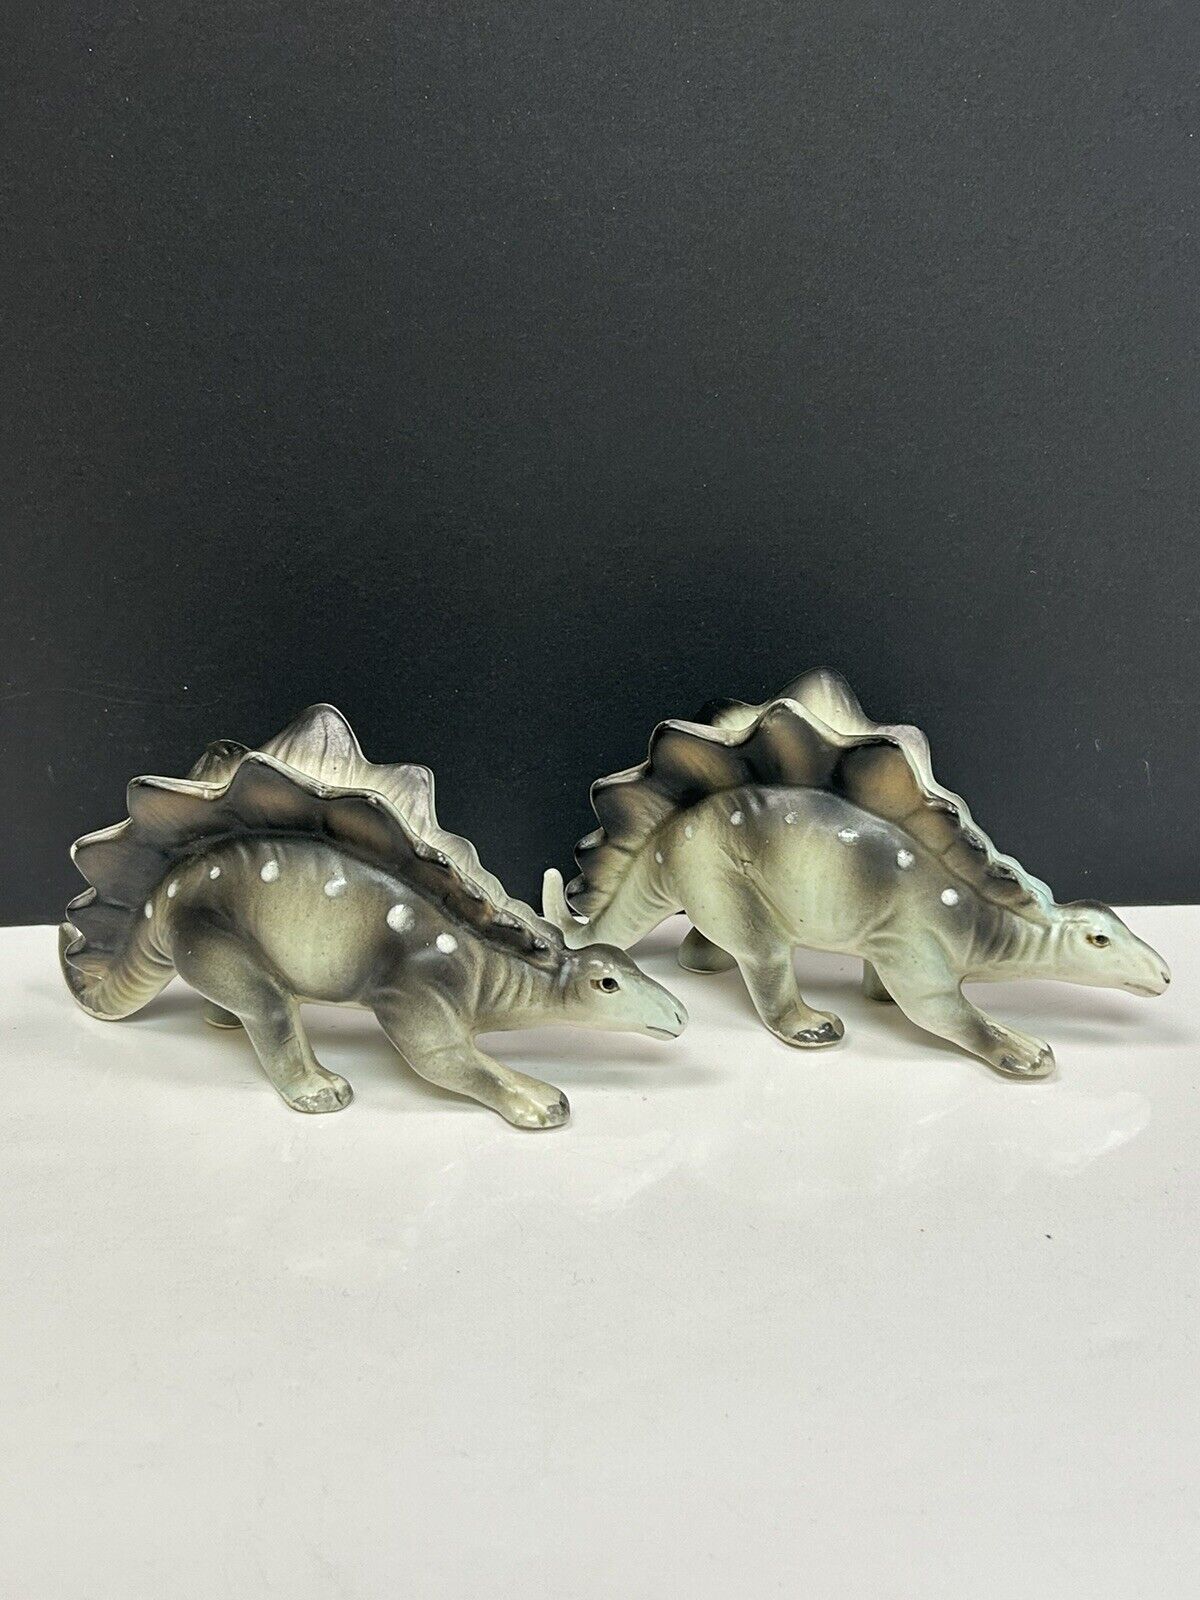 Rare Vintage 1950’s Japan Ceramic Dinosaur Stegosaurus 